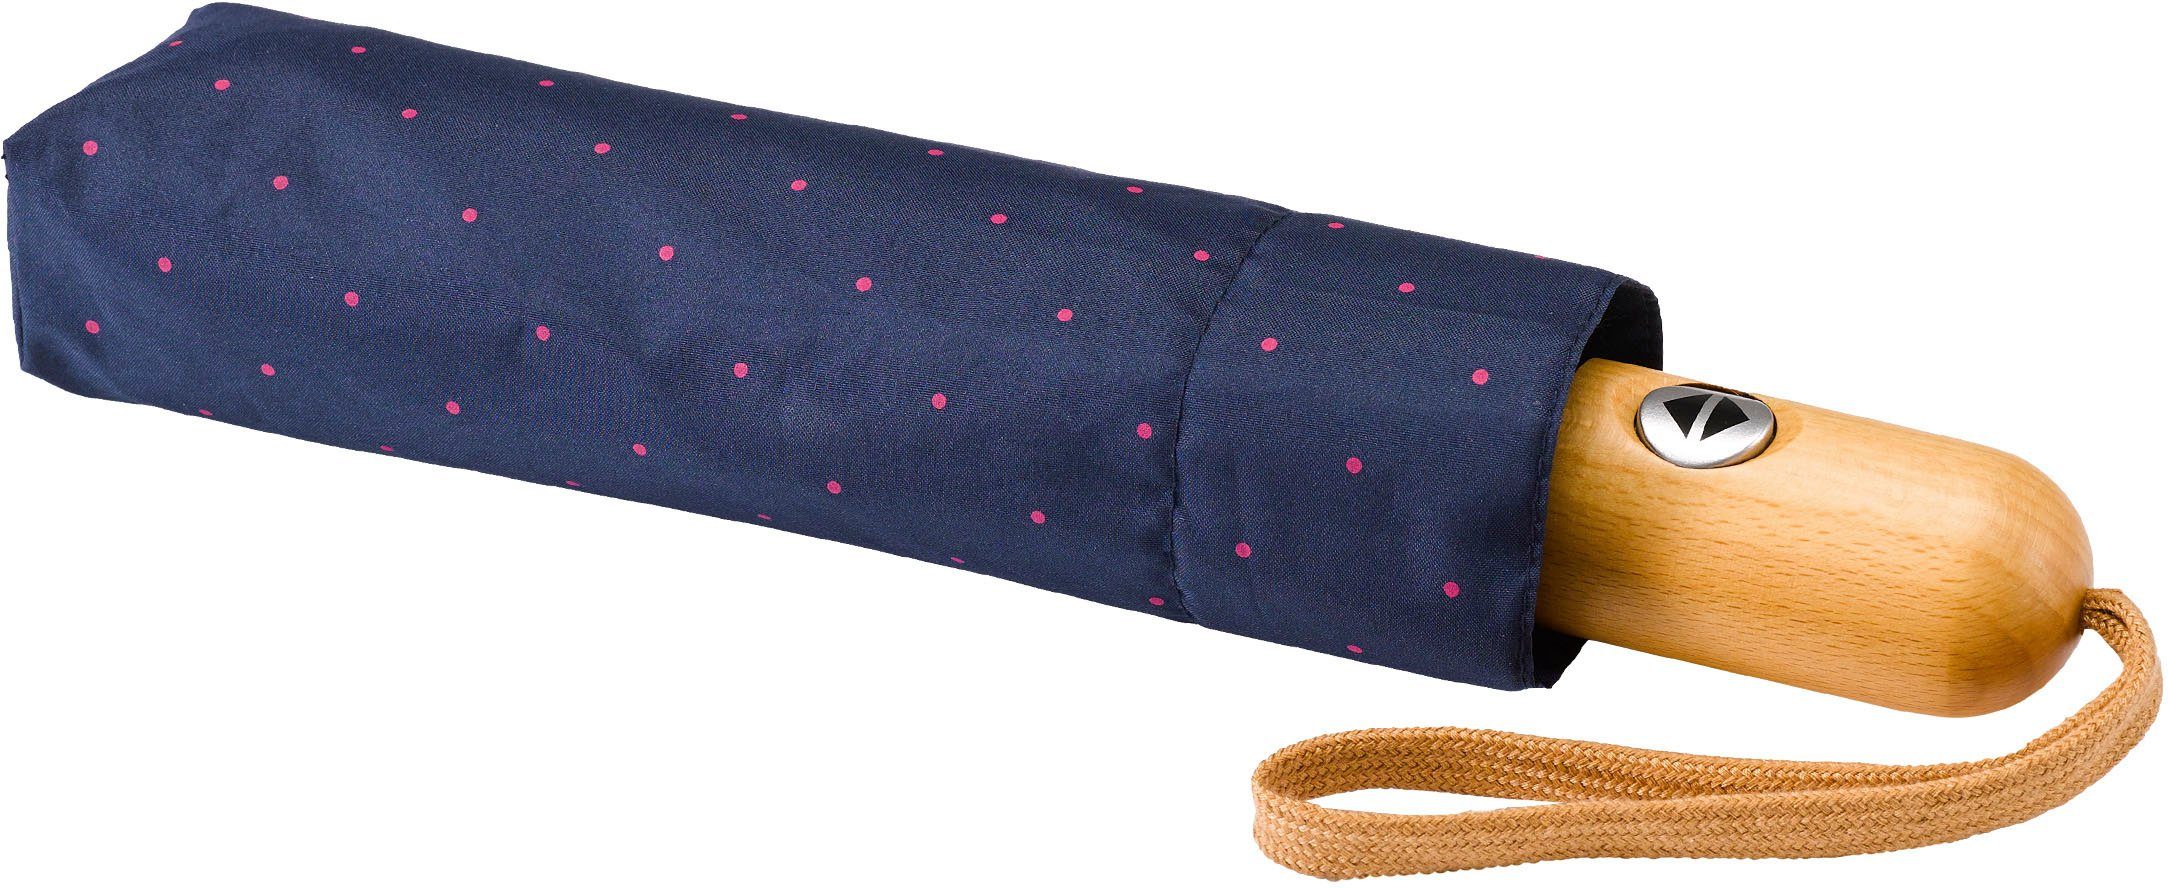 EuroSCHIRM® Taschenregenschirm Punkte Umwelt-Taschenschirm, marine, pink